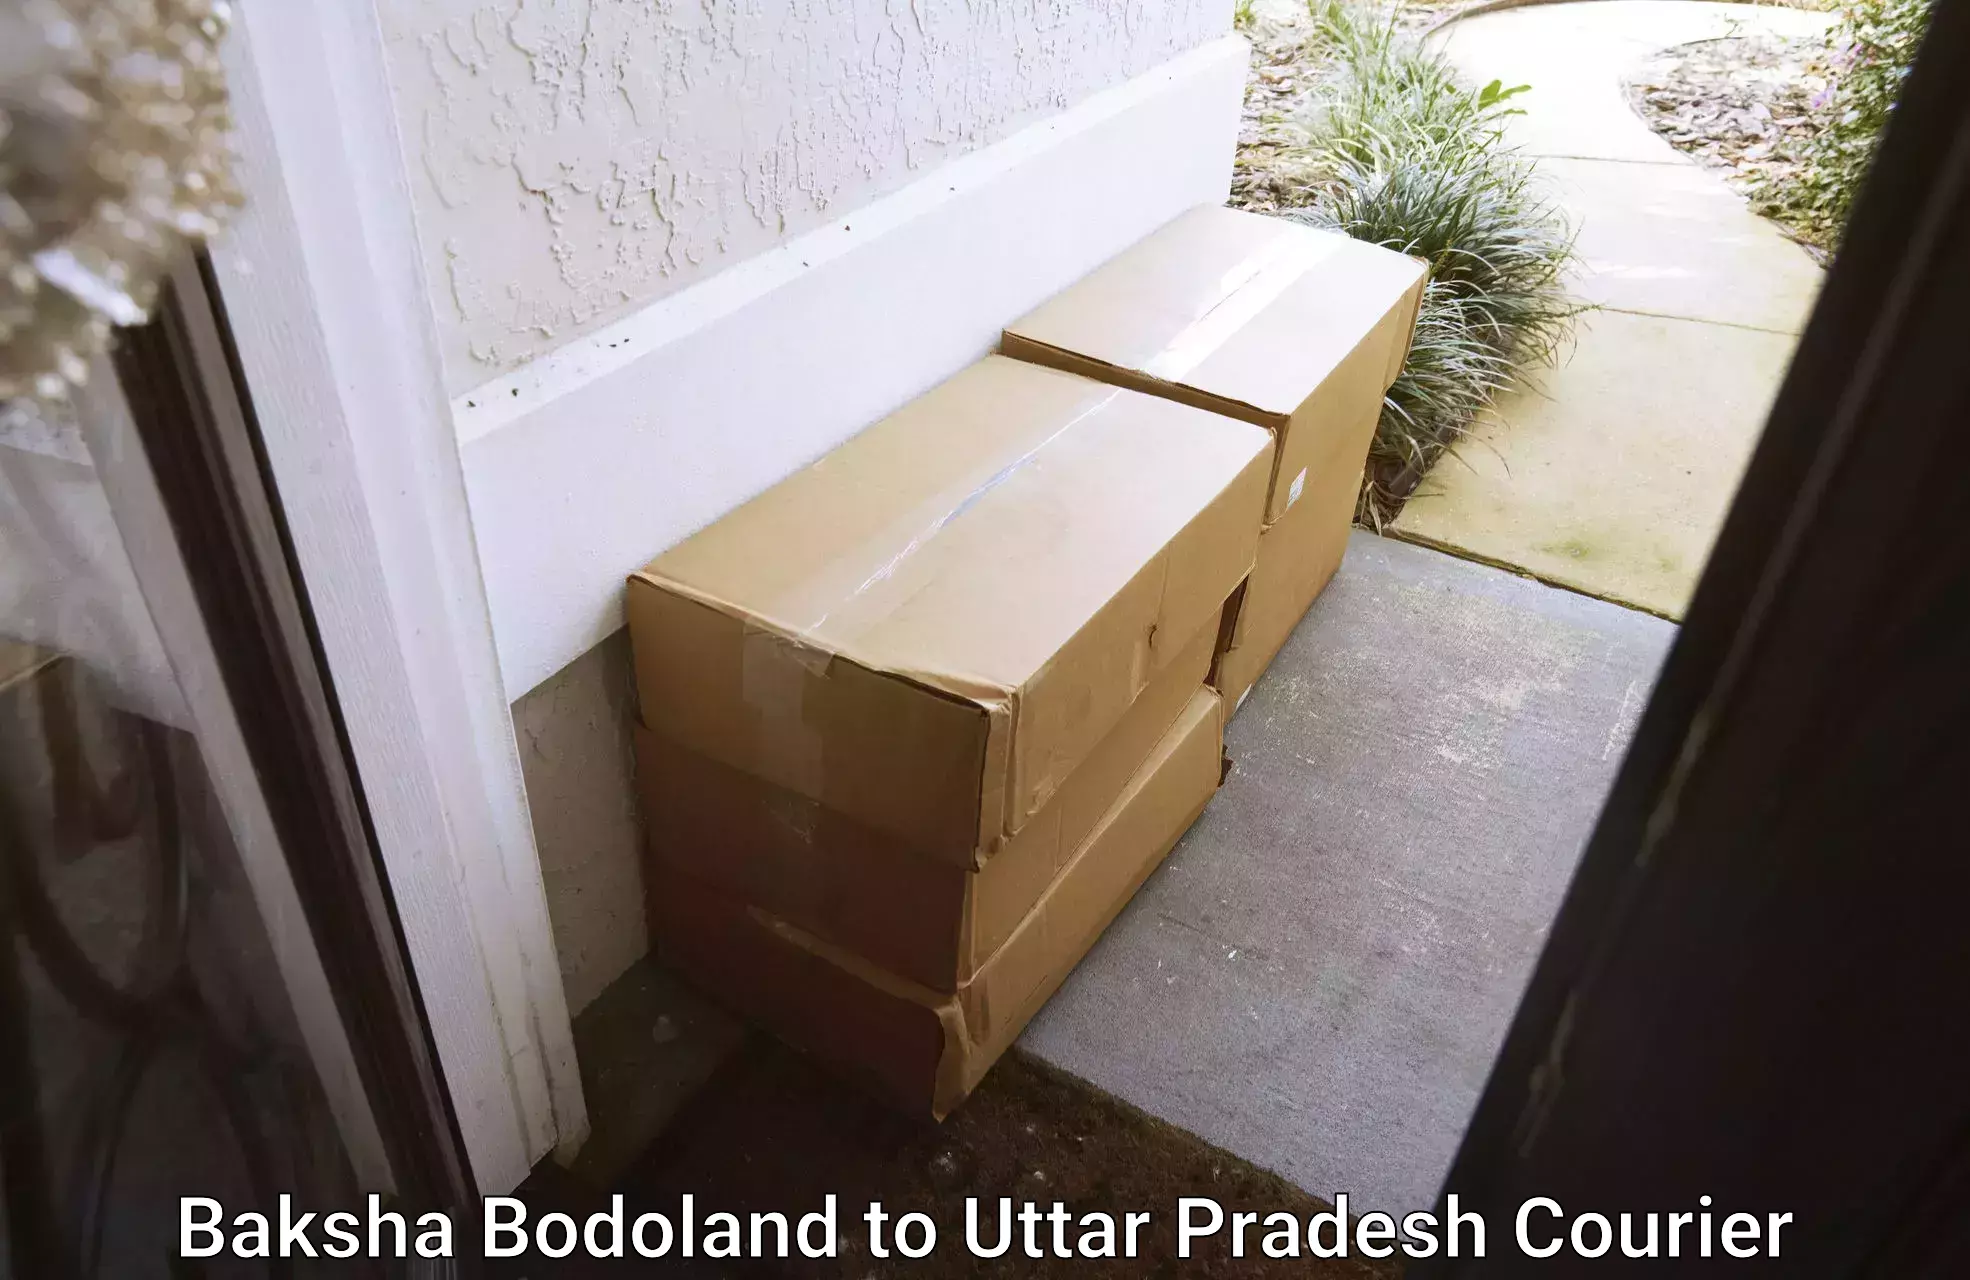 Full-service courier options Baksha Bodoland to Pratapgarh